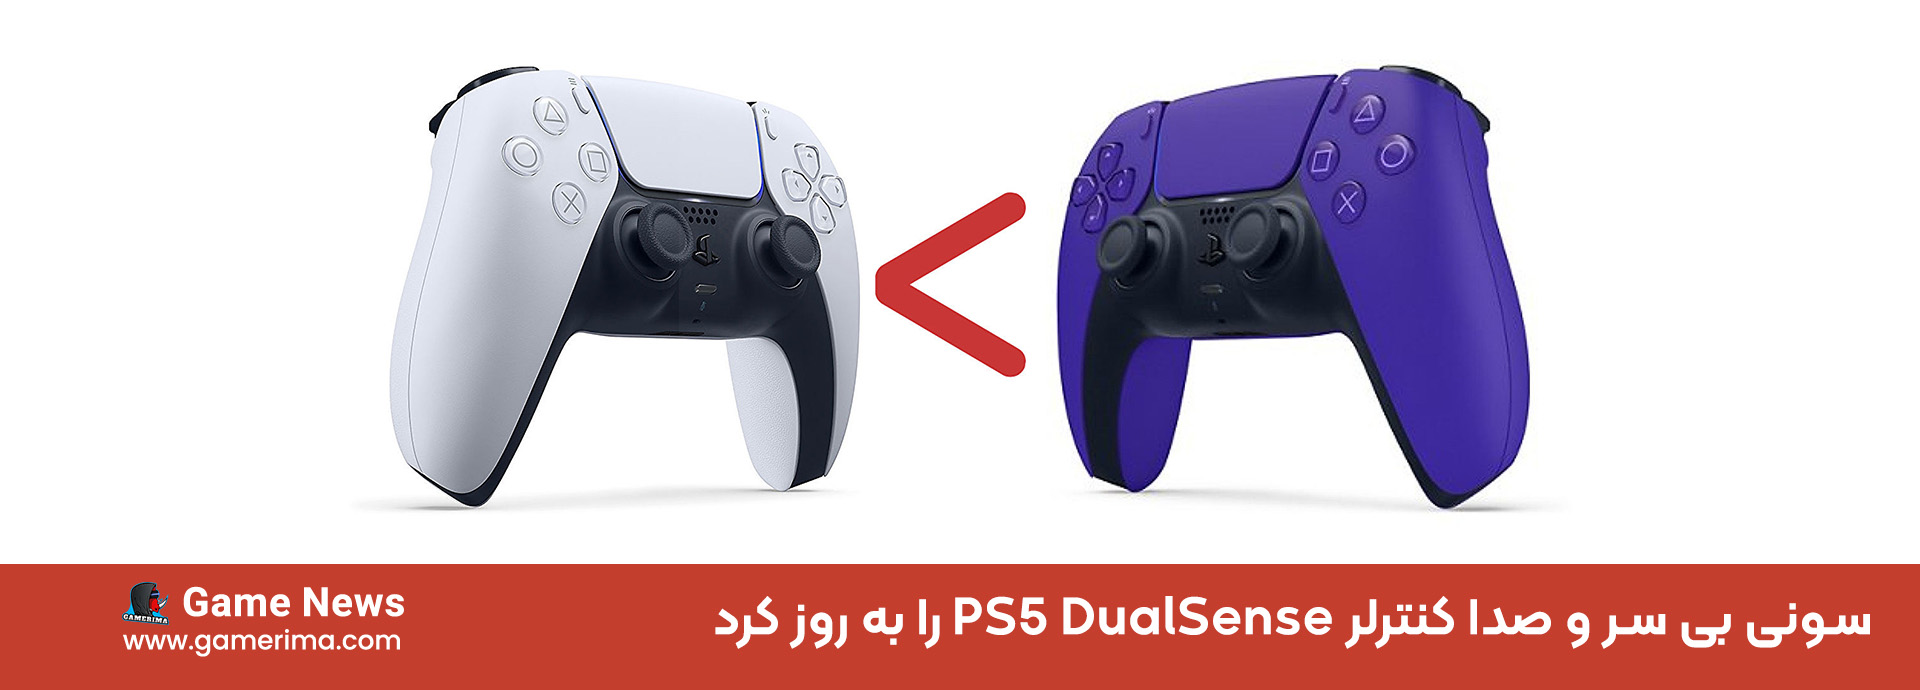 سونی بی سر و صدا کنترلر PS5 DualSense را به روز کرد